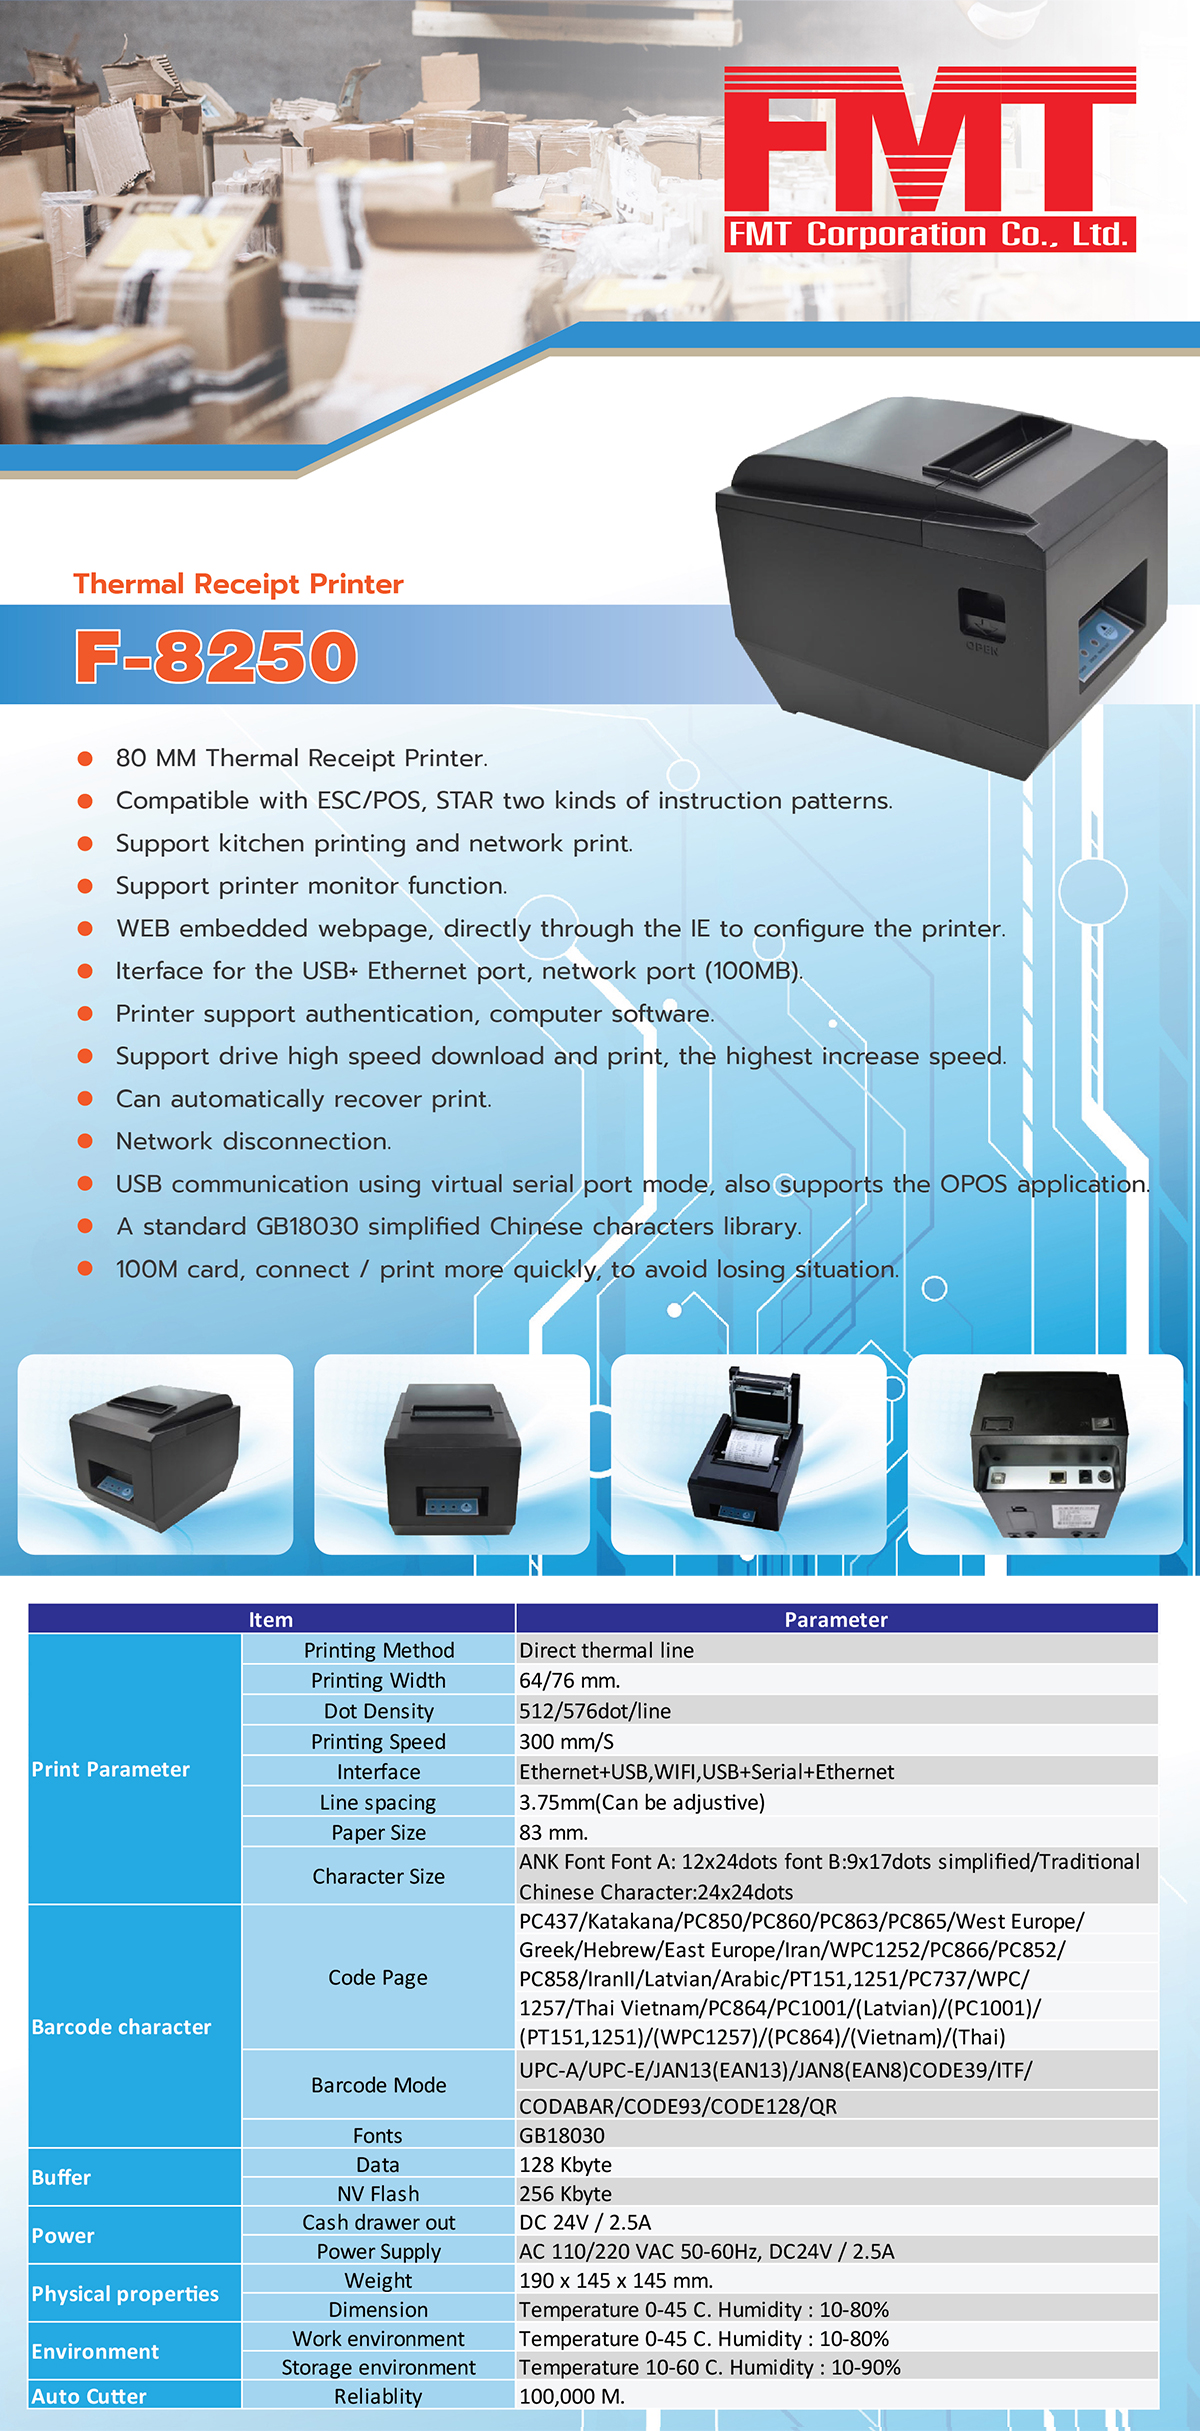 F-8250 Thermal Printer